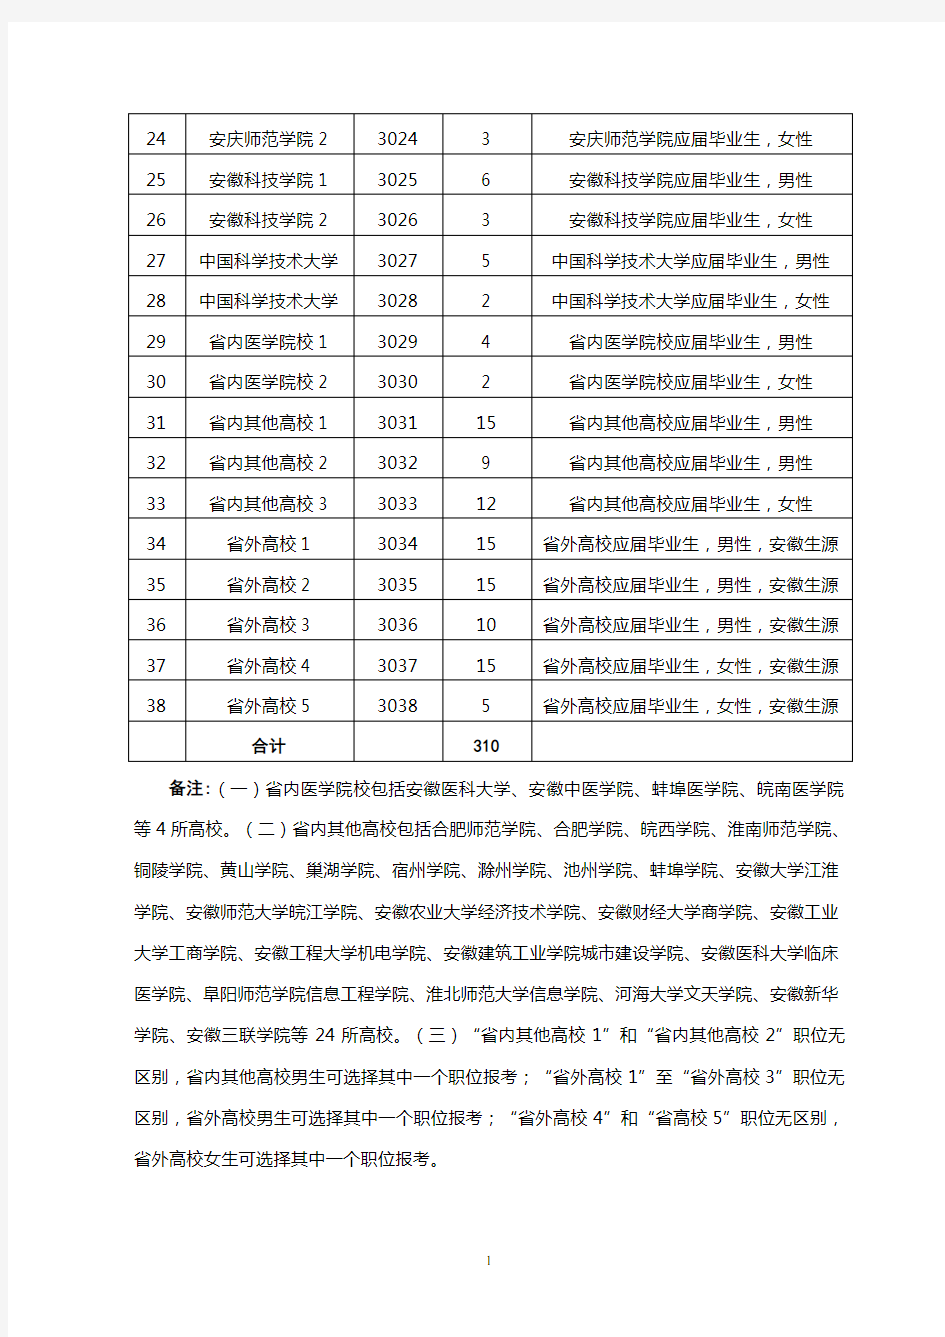 安徽省2012年选调生招录职位表(一)